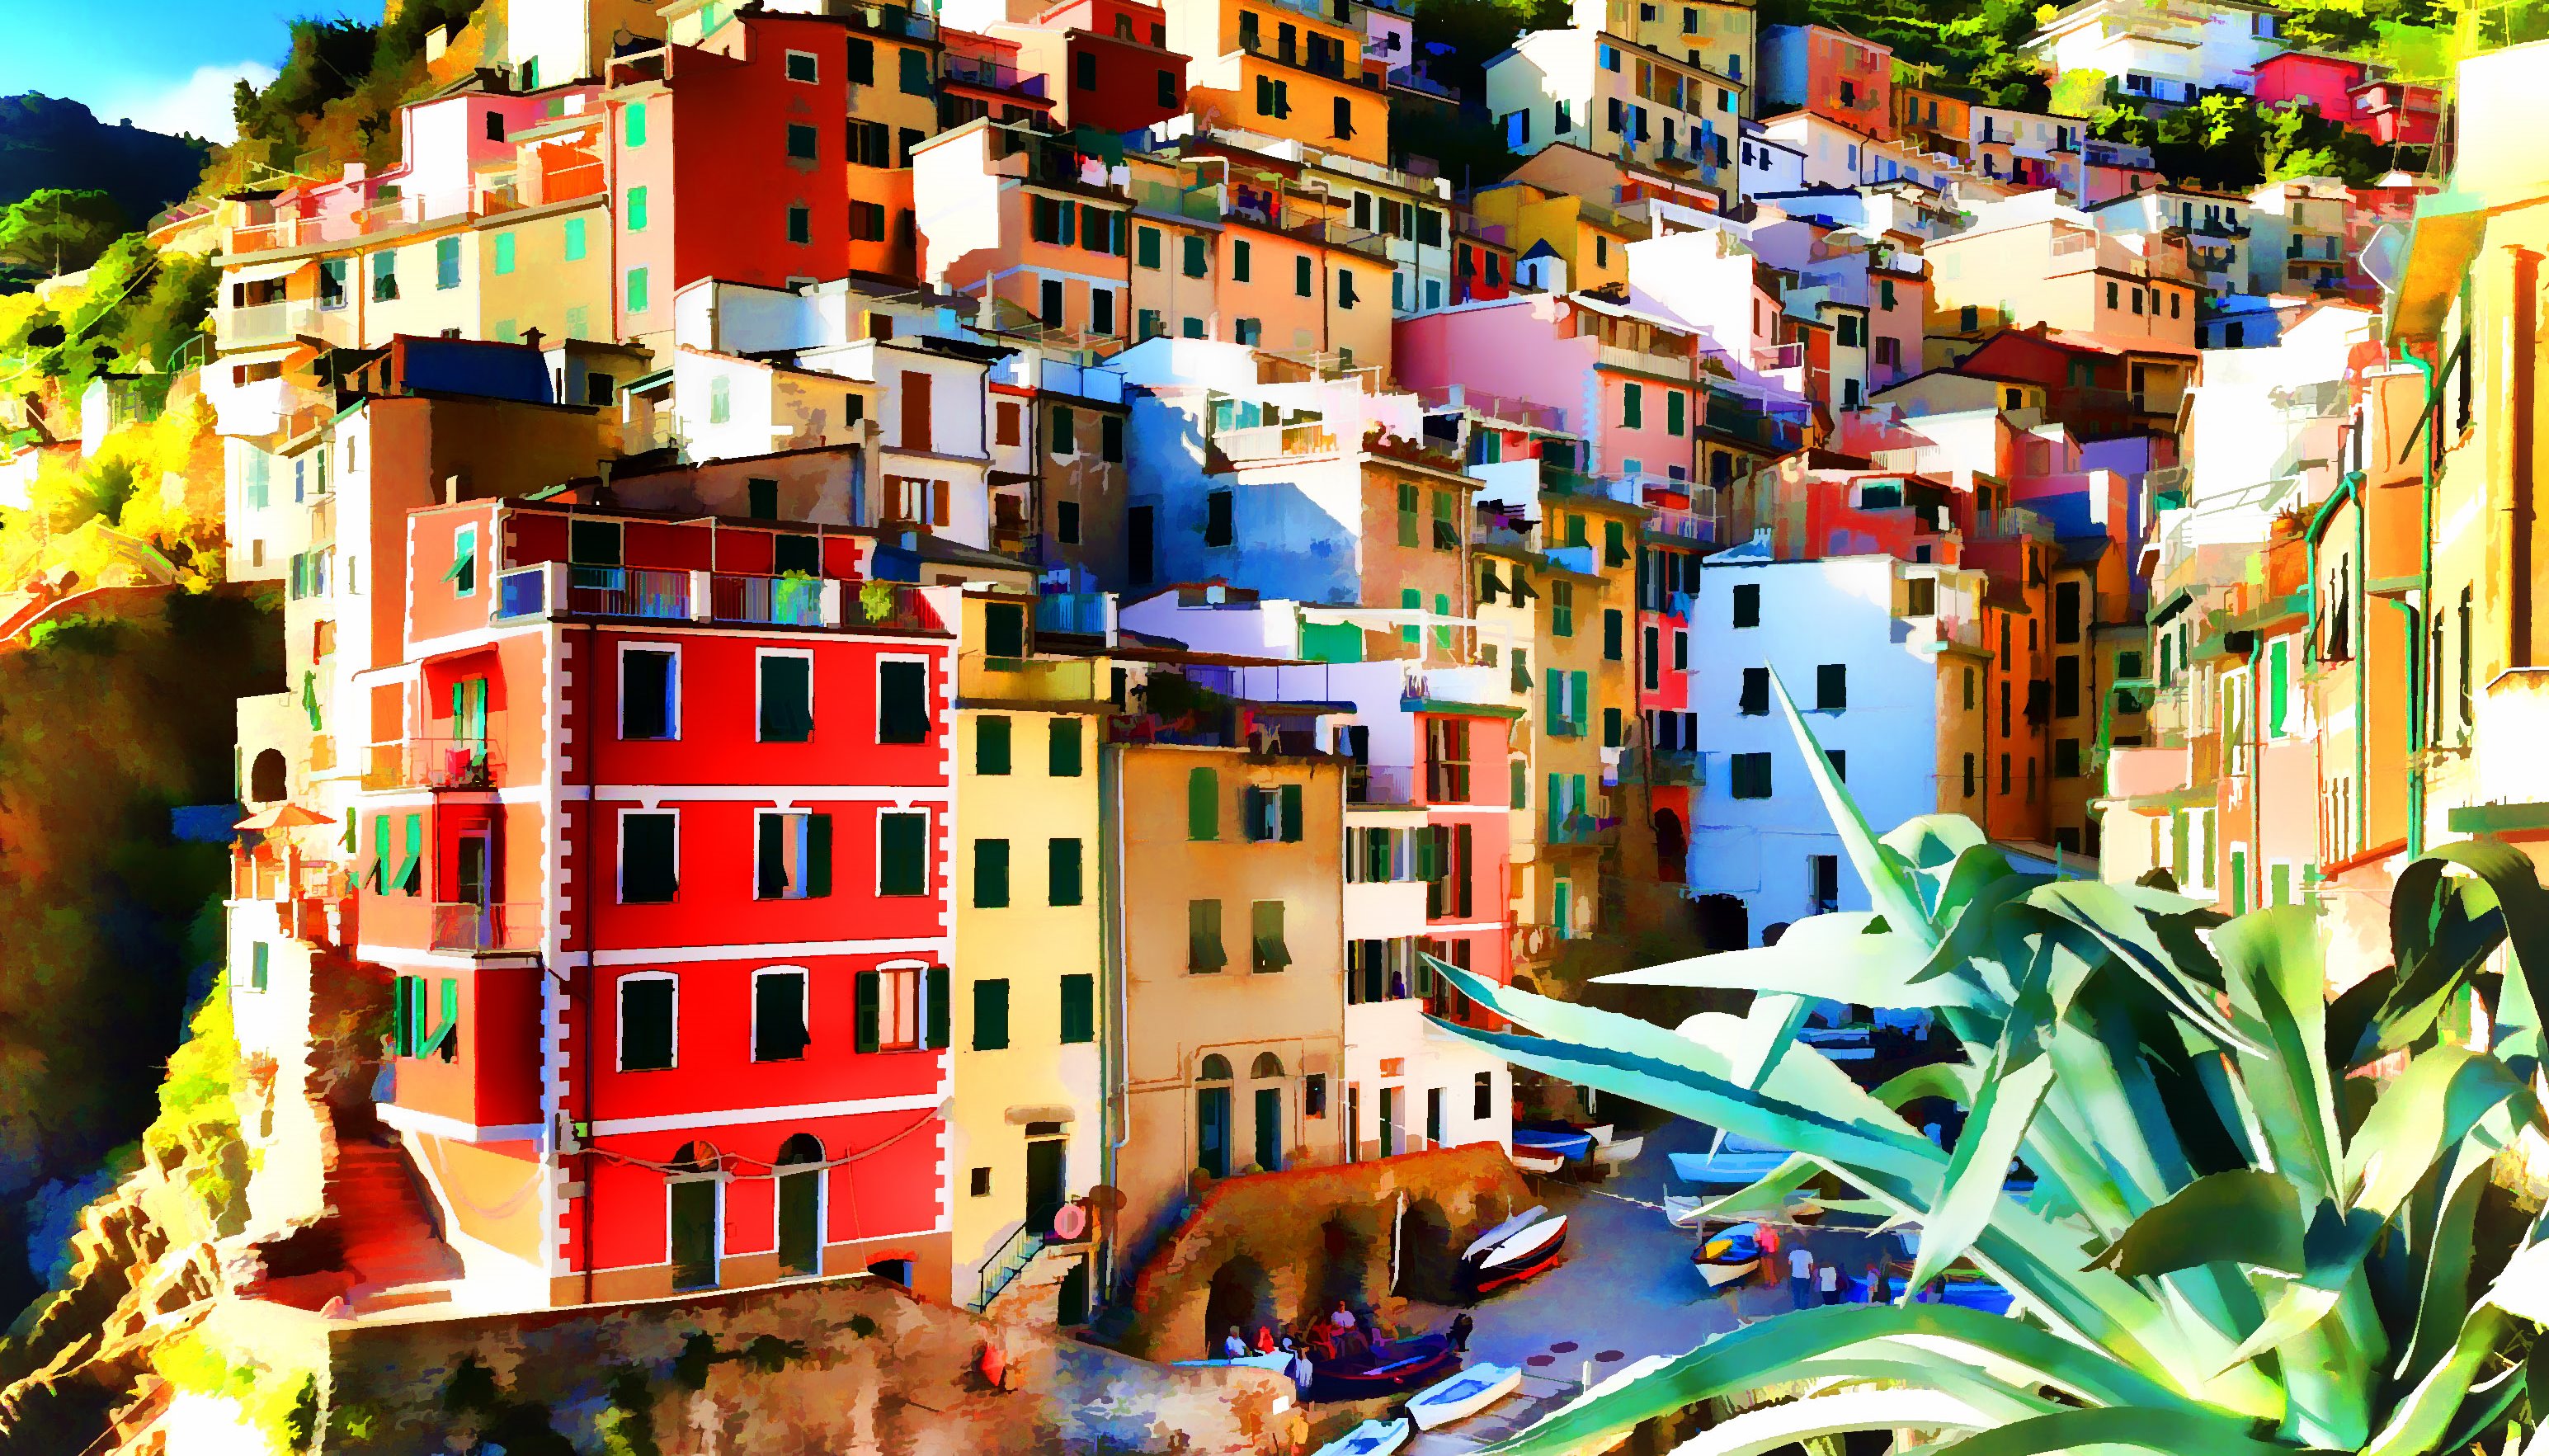 Read Cinque Terre by Kim Bridges